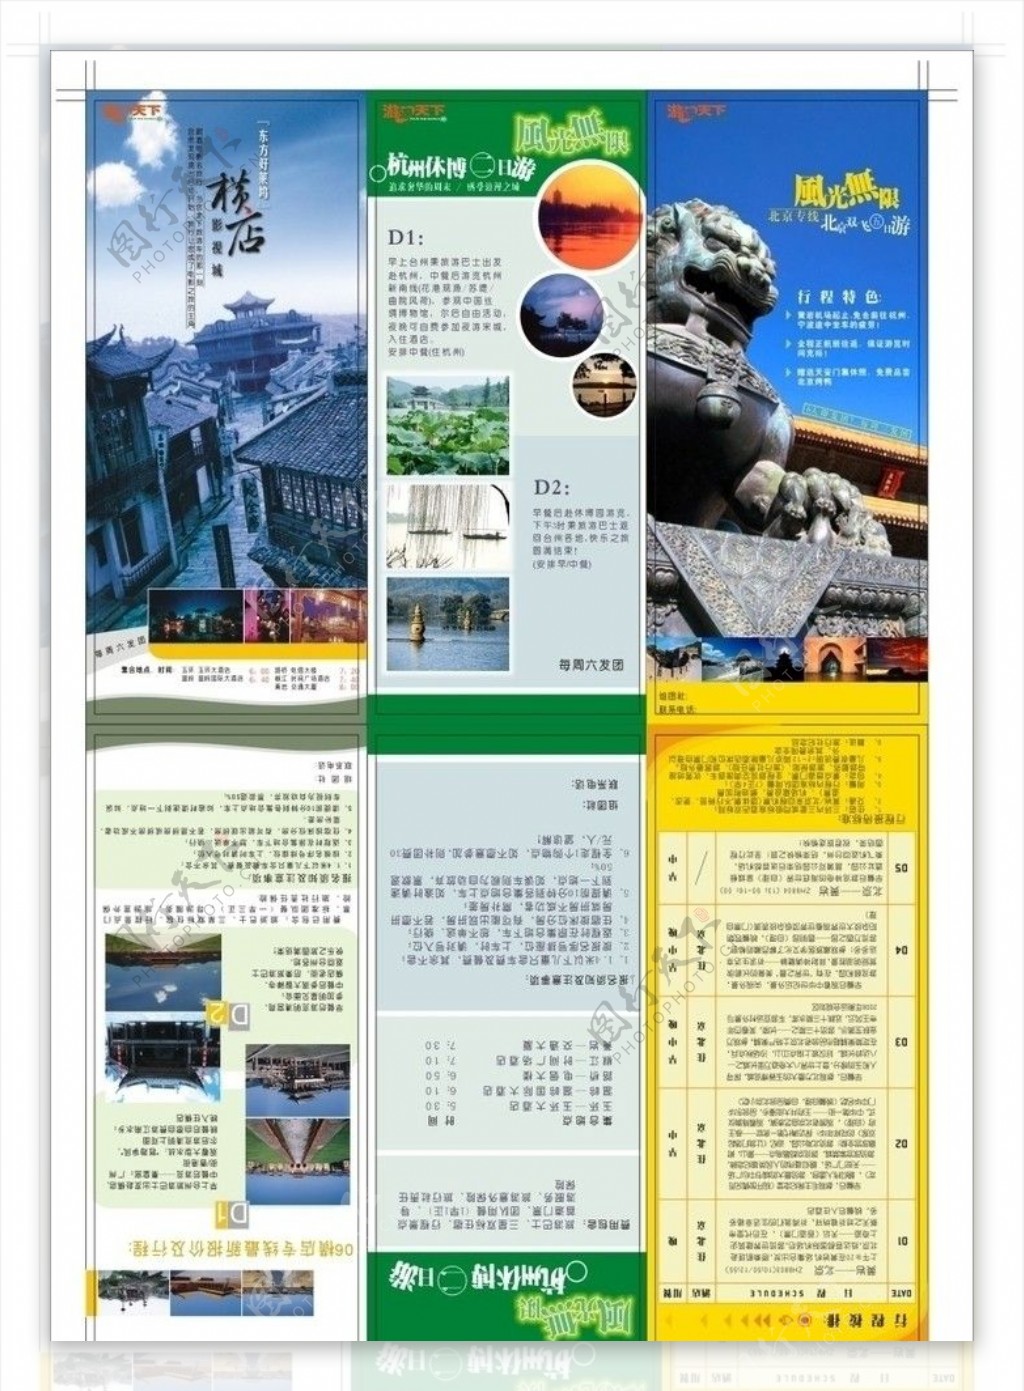 横店旅游公司宣传单图片